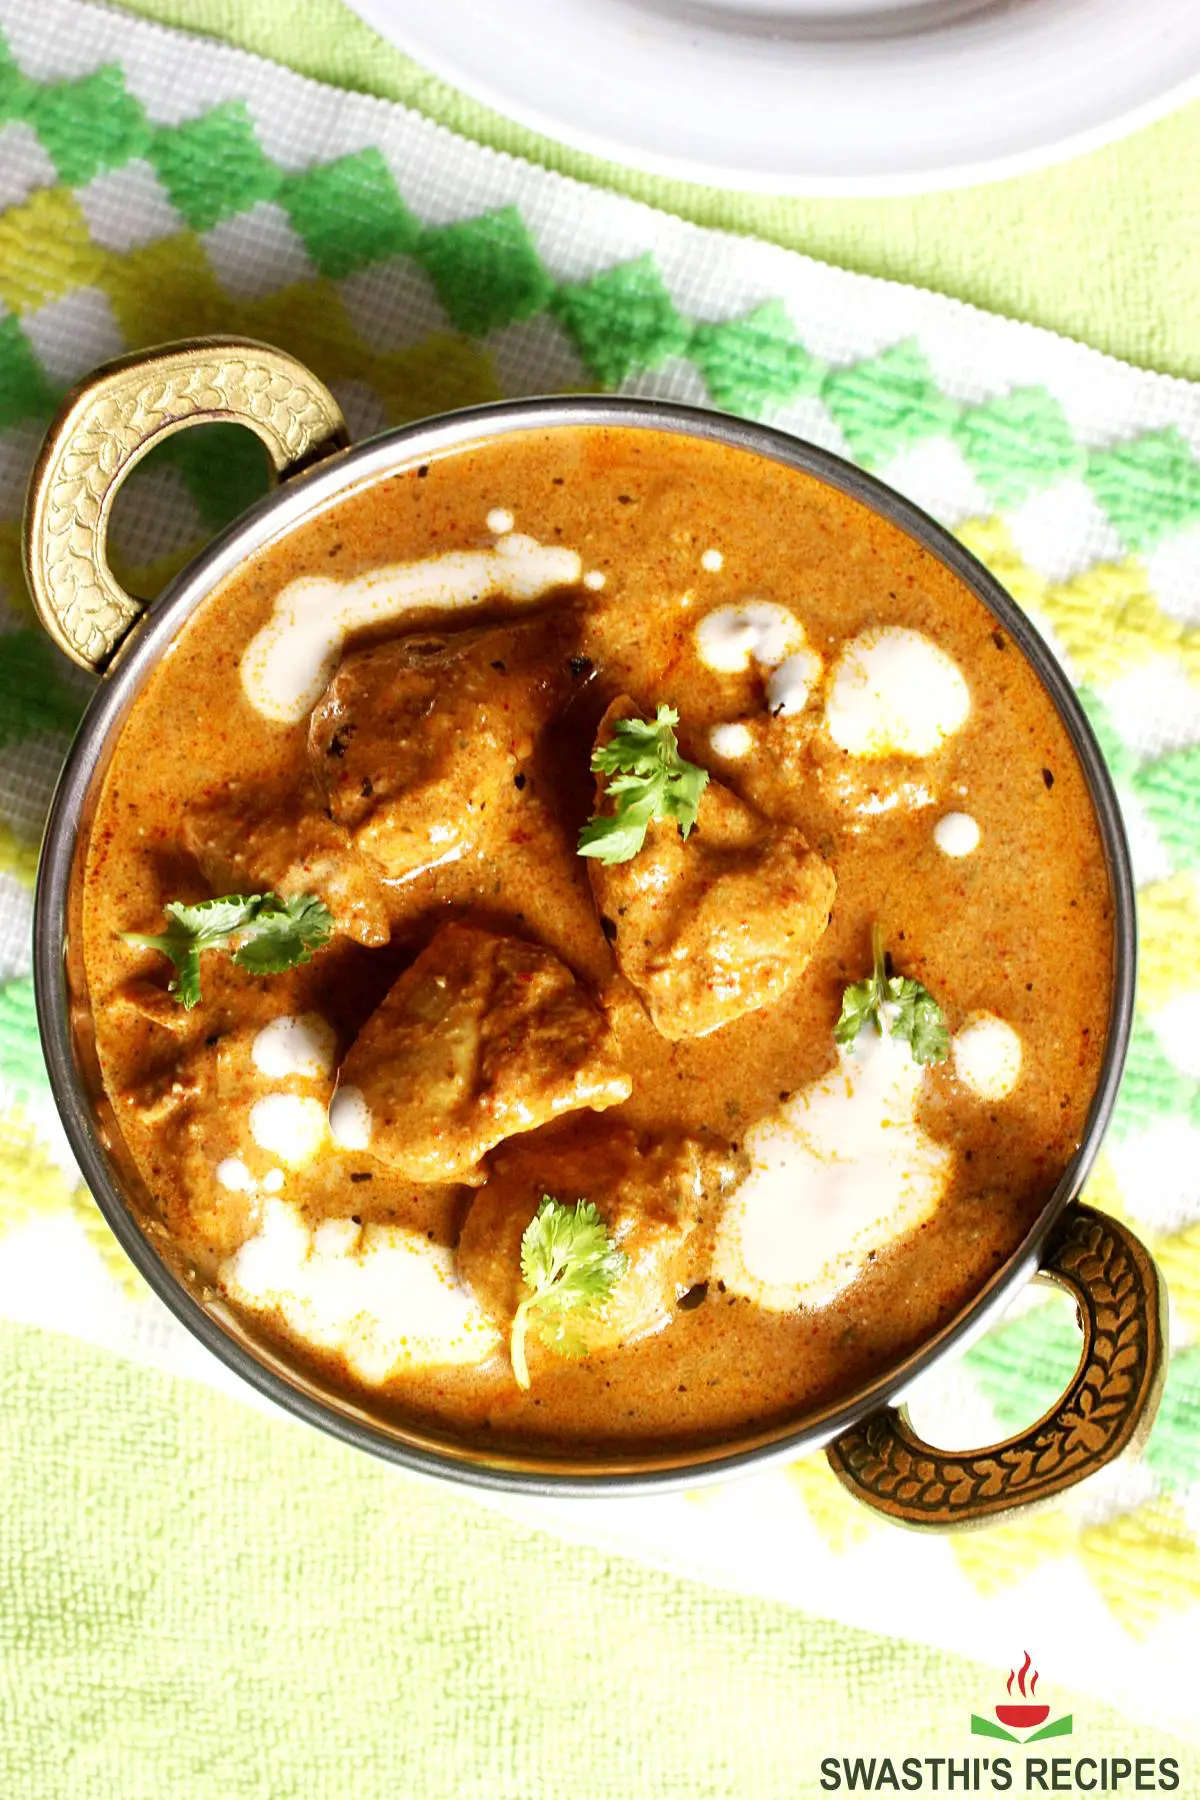 Butter chicken, Indian Chicken makhani served in a kadai